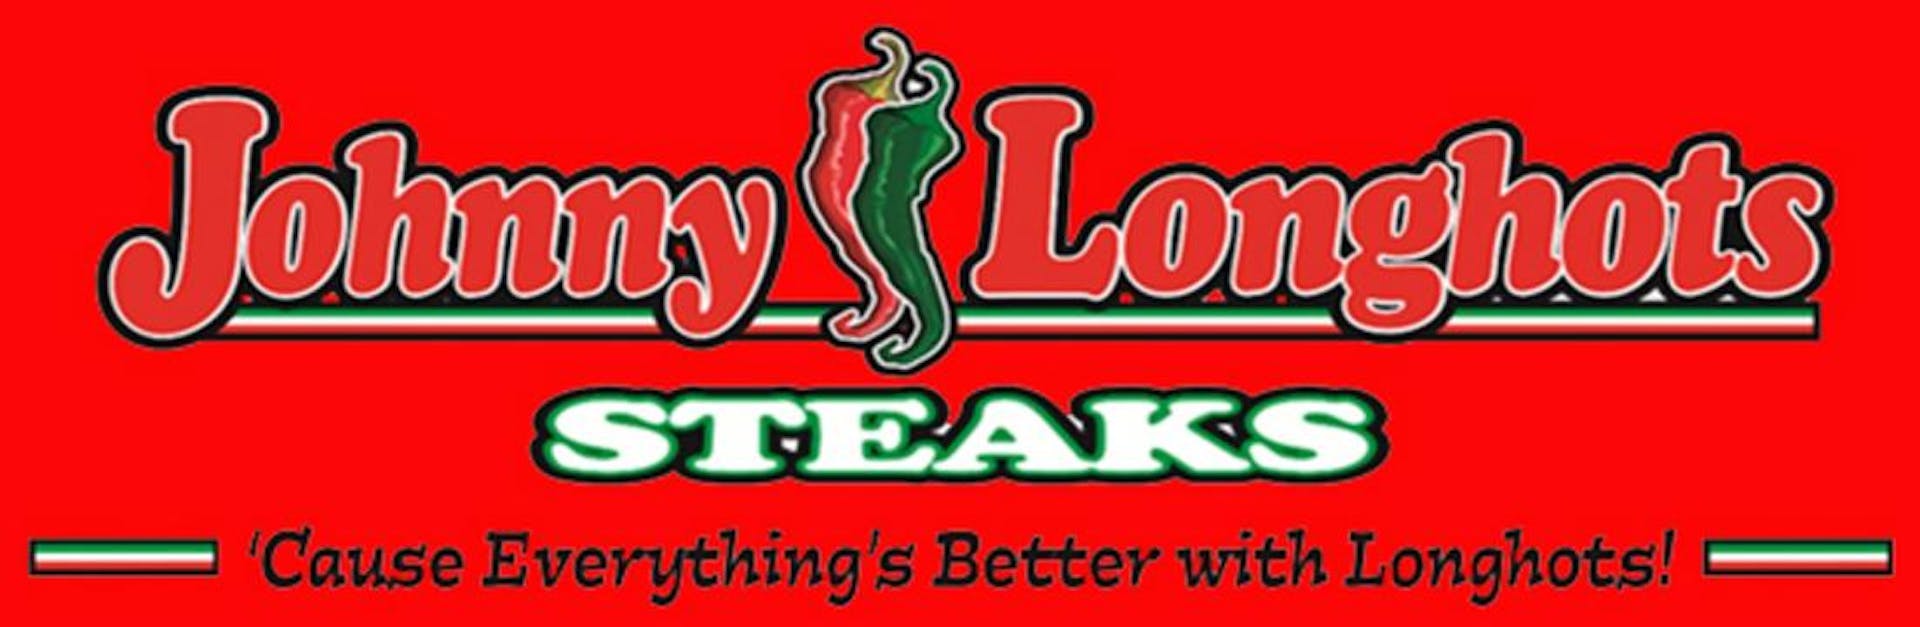 Johnny Longhots Steaks